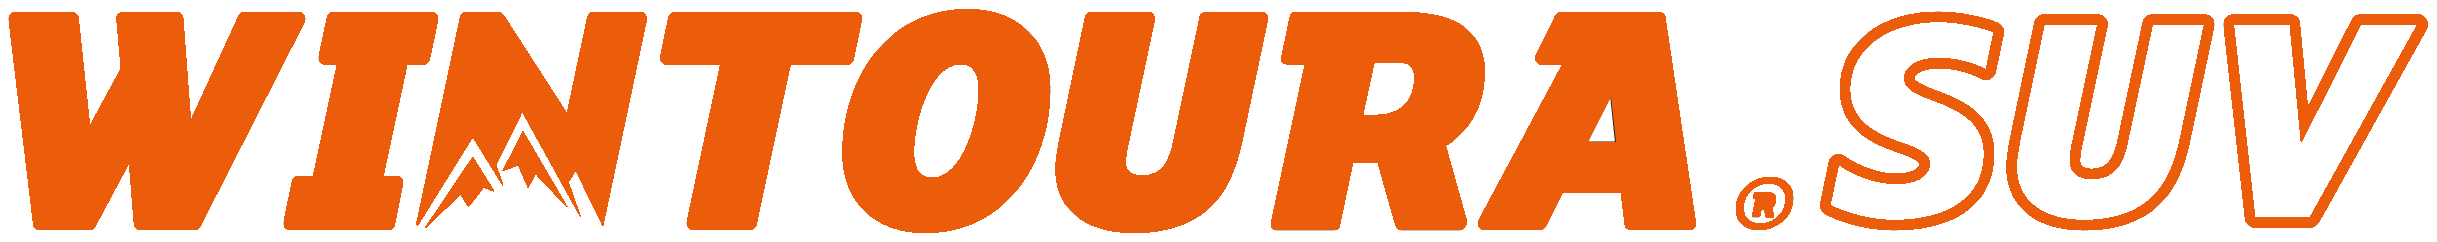 Davanti_Wintoura_SUV_logo-orange